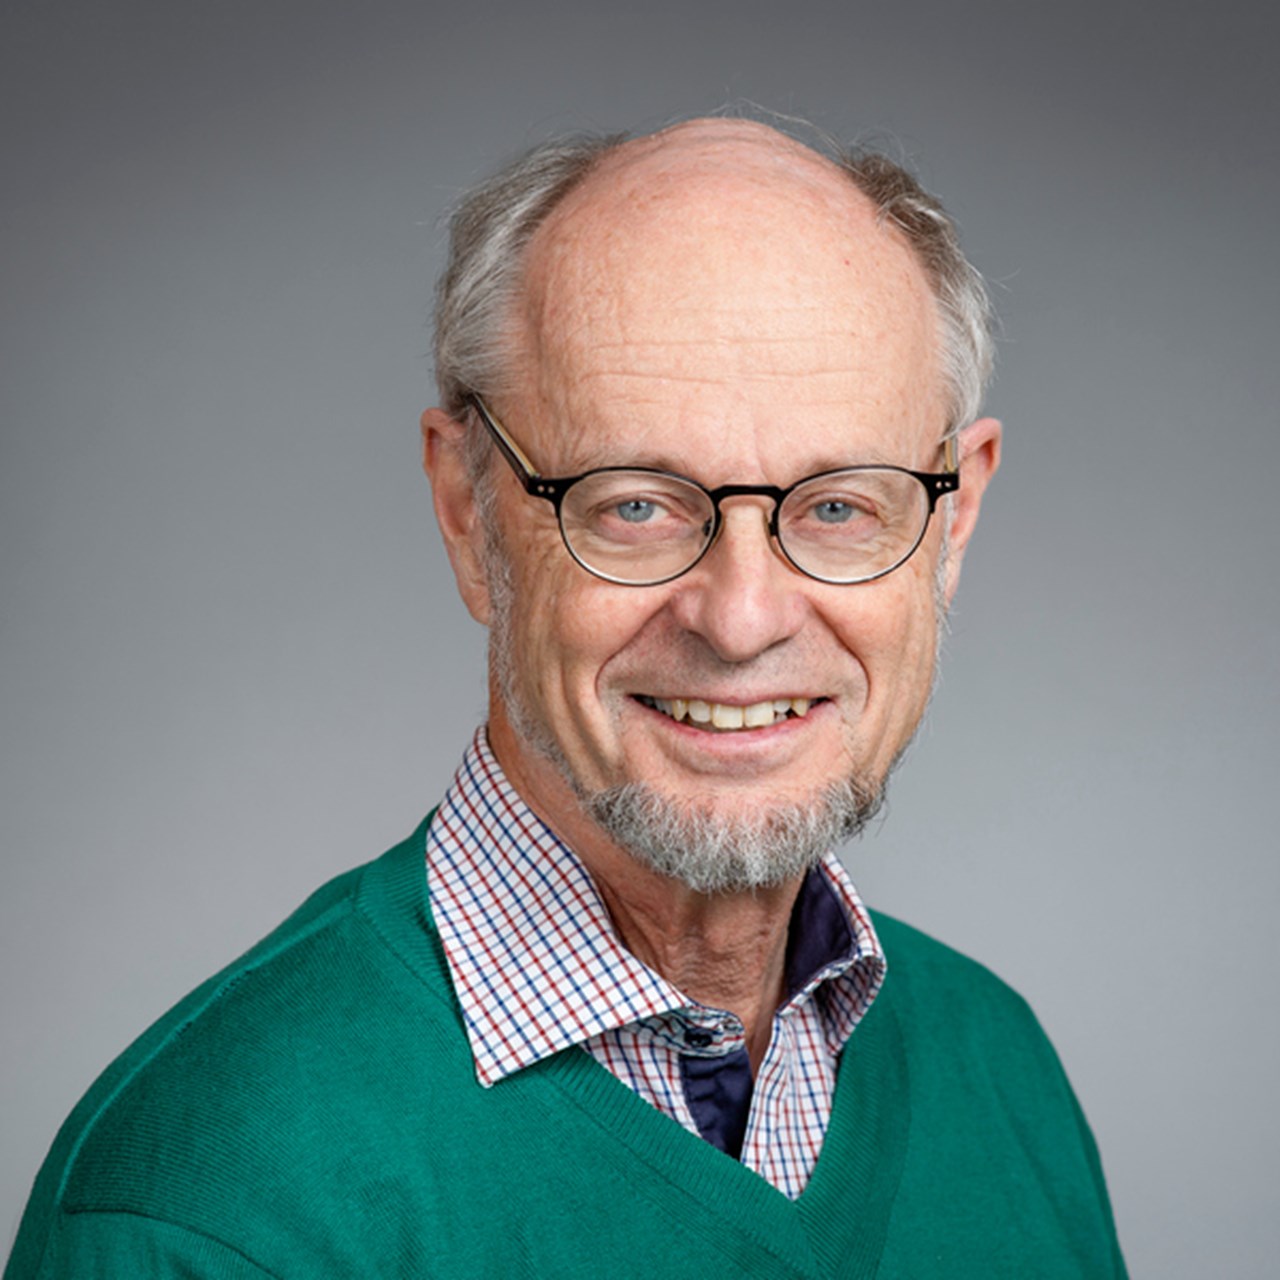 Porträtt på Bengt Järvholm, professor vid Institutionen för folkhälsa och klinisk medicin, Umeå universitet.